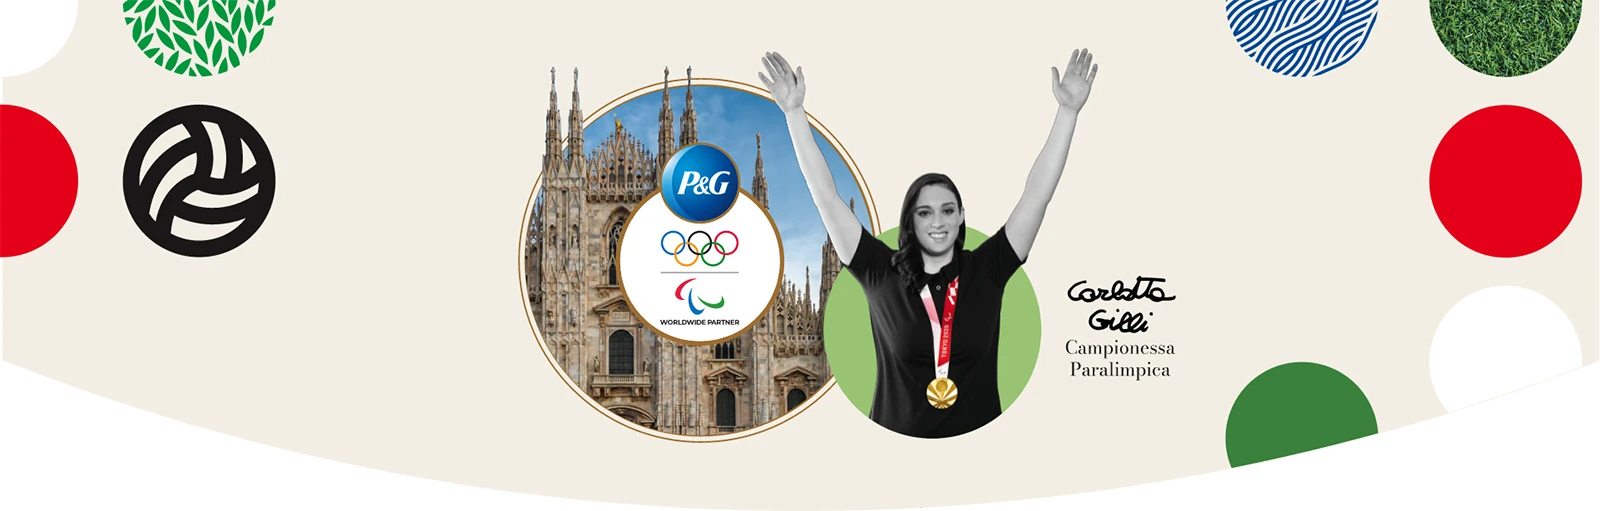 Carlotta Gilli ambassador di P&G per la campagna Campioni Ogni Giorno realizzata in vista dei Giochi Olimpici e Paralimpici di Milano Cortina 2026.